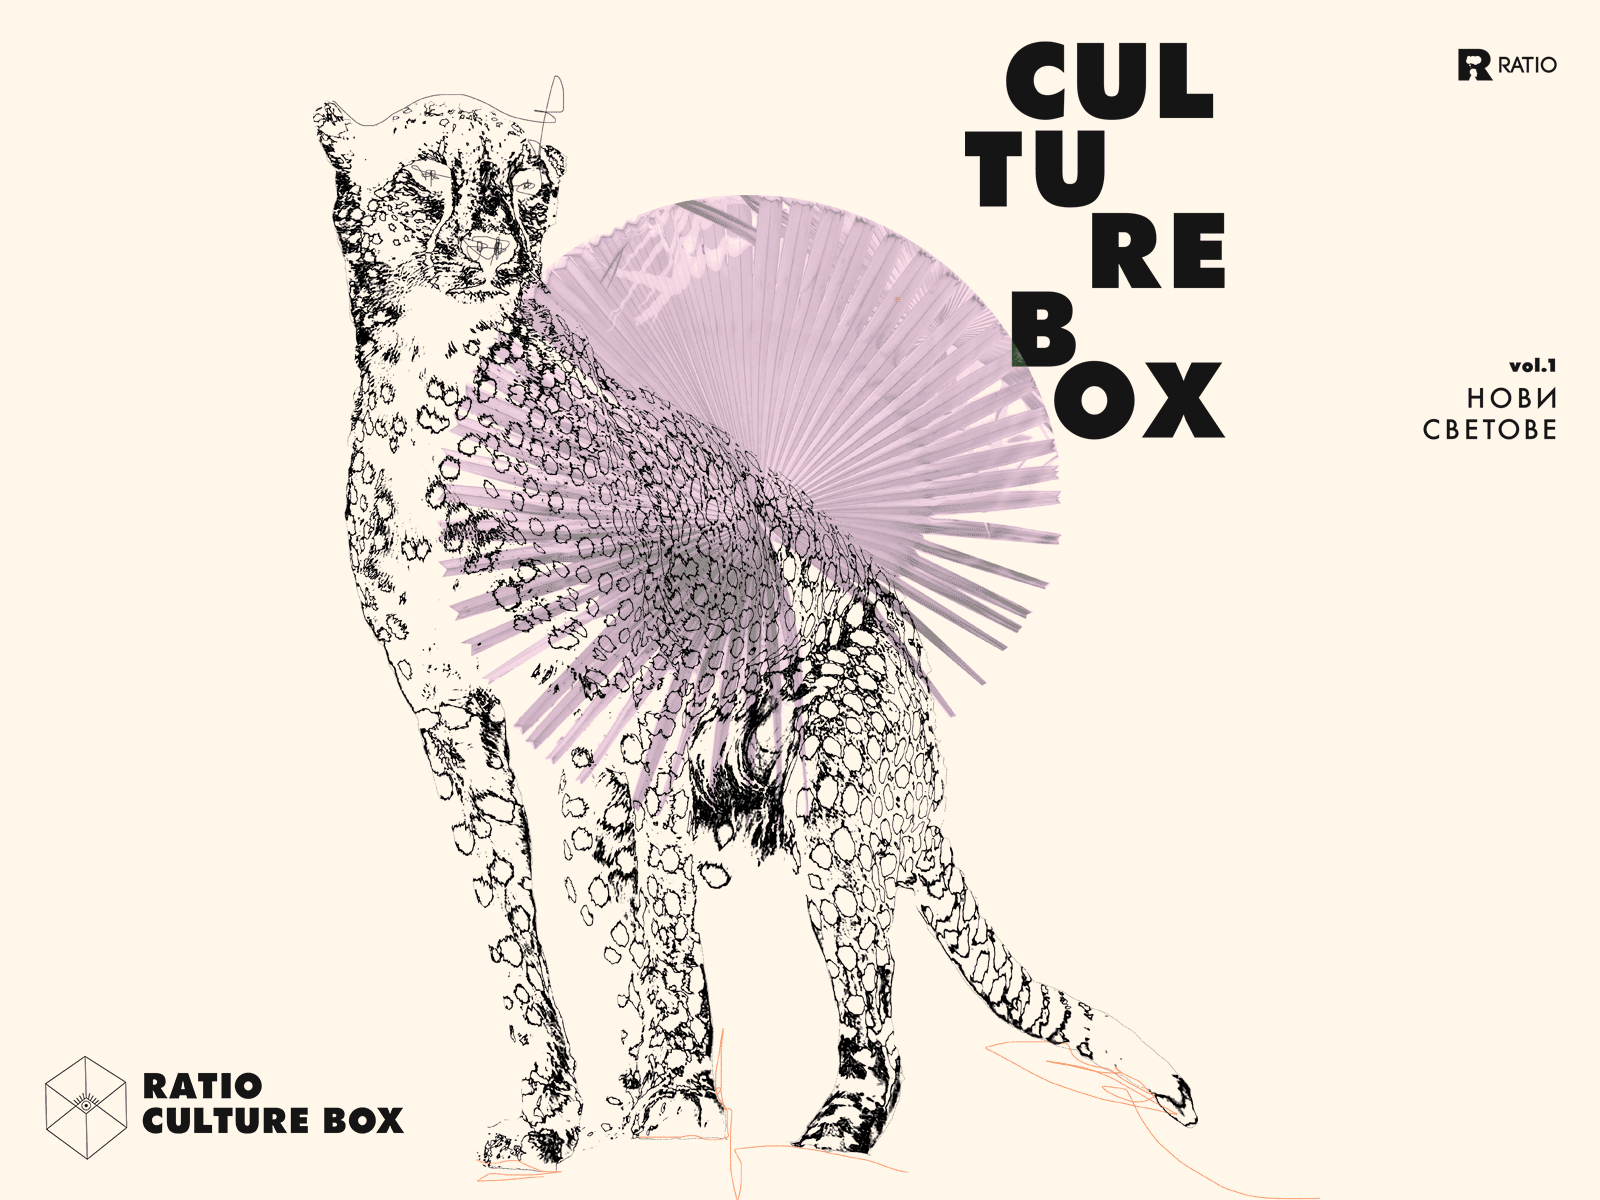 Culture Box vol.1 box cheetah collage culture culturebox photo collage ratio